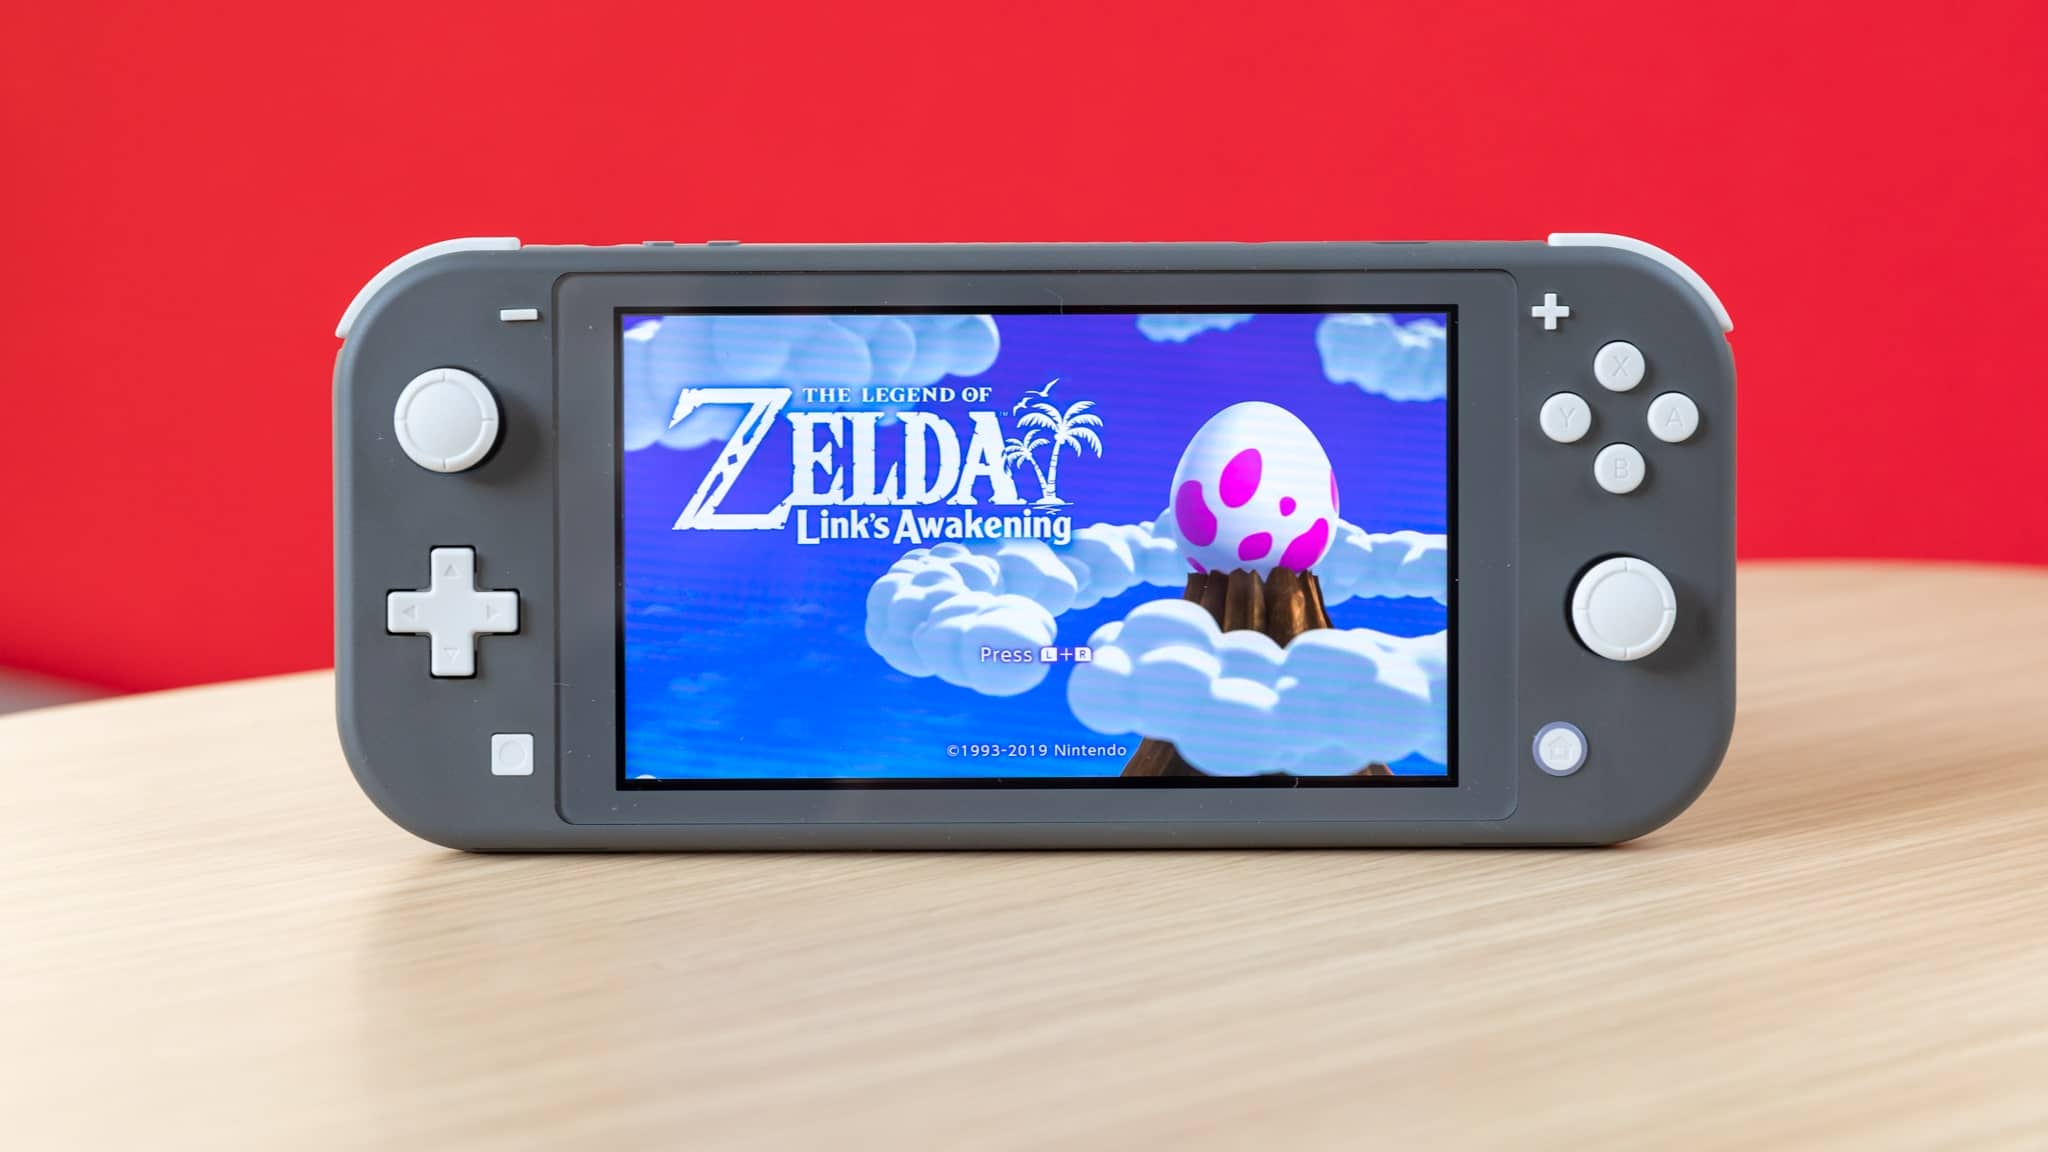 کنسول بازی نینتندو Nintendo Switch Lite - Grey